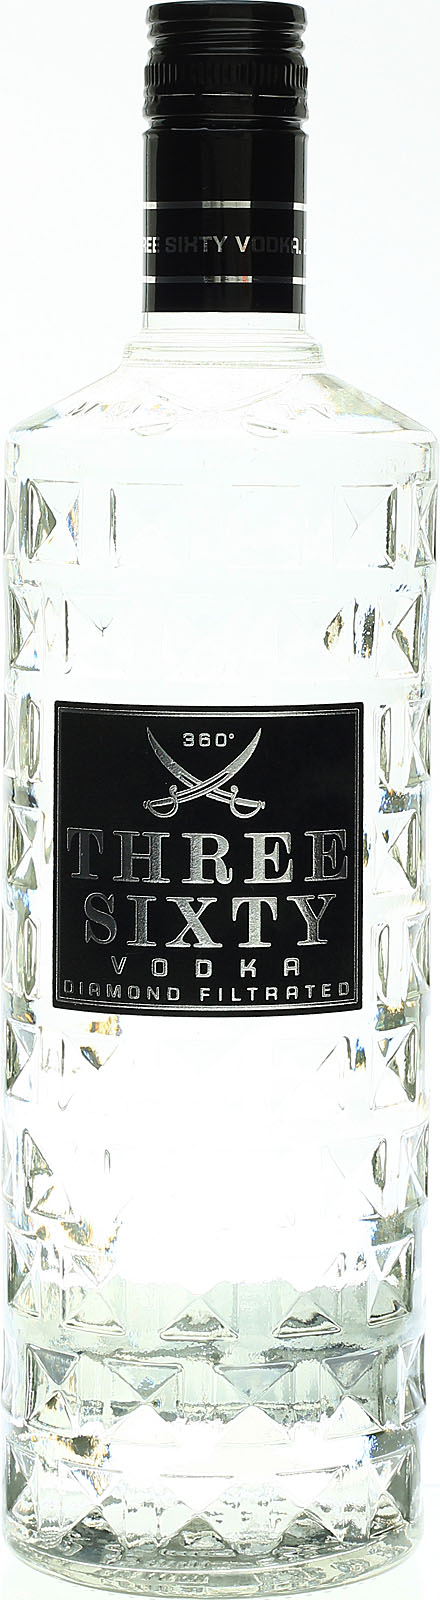 Three Sixty Diamond Filtration Vodka im Shop bestellen